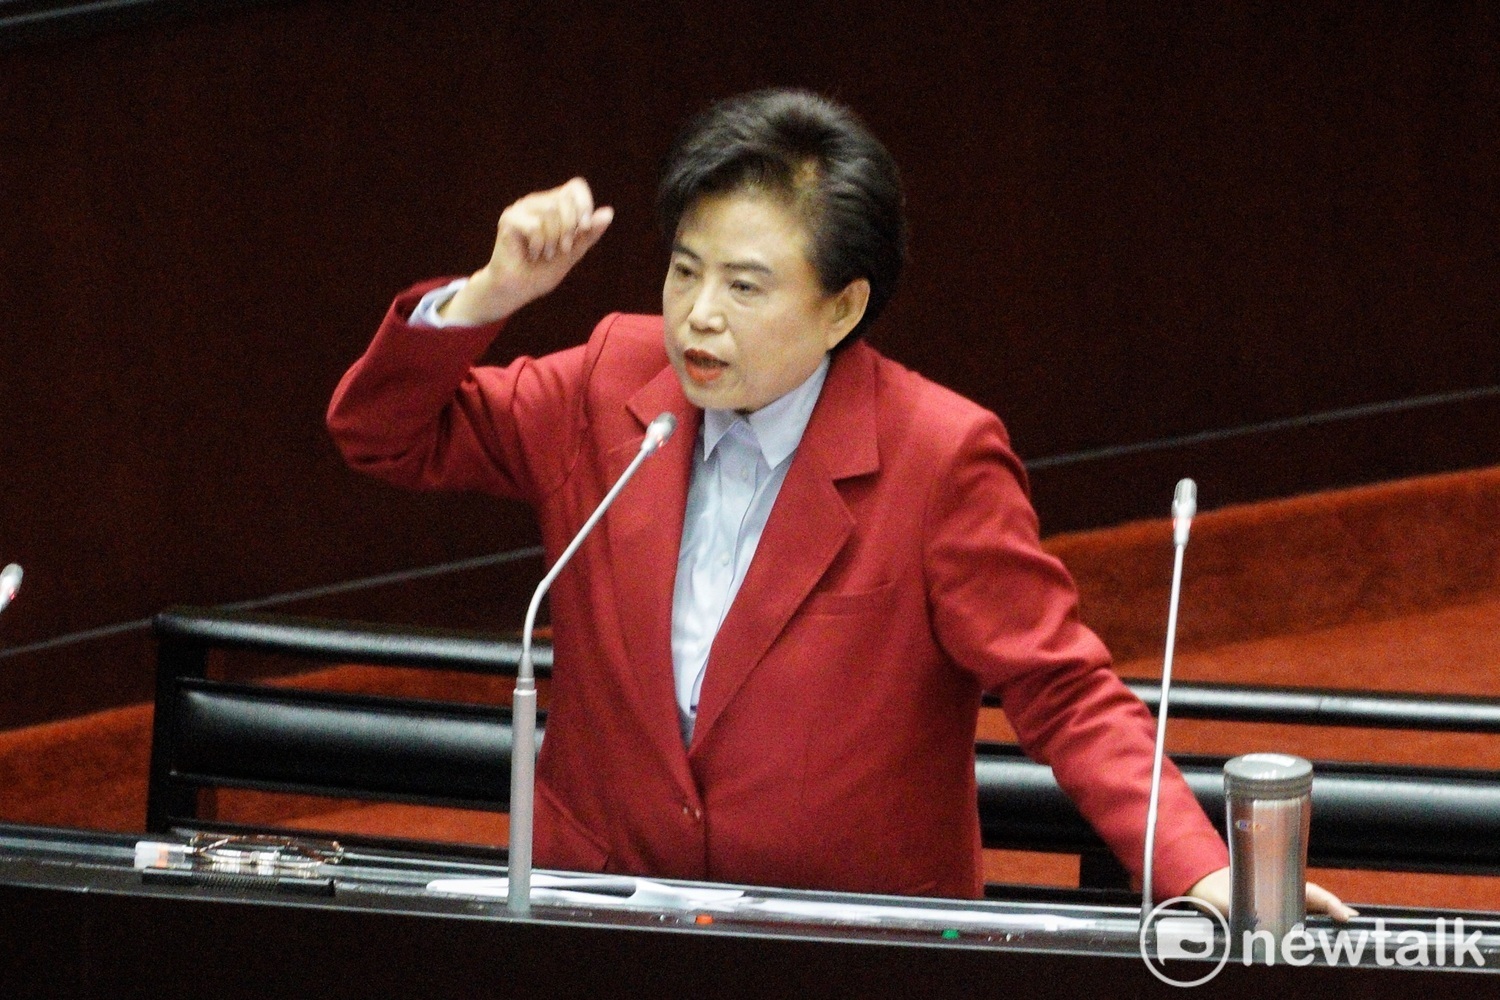 「66歲女博士」沈智慧宣布再戰立委 同選區年輕世代失望 | 政治 | N